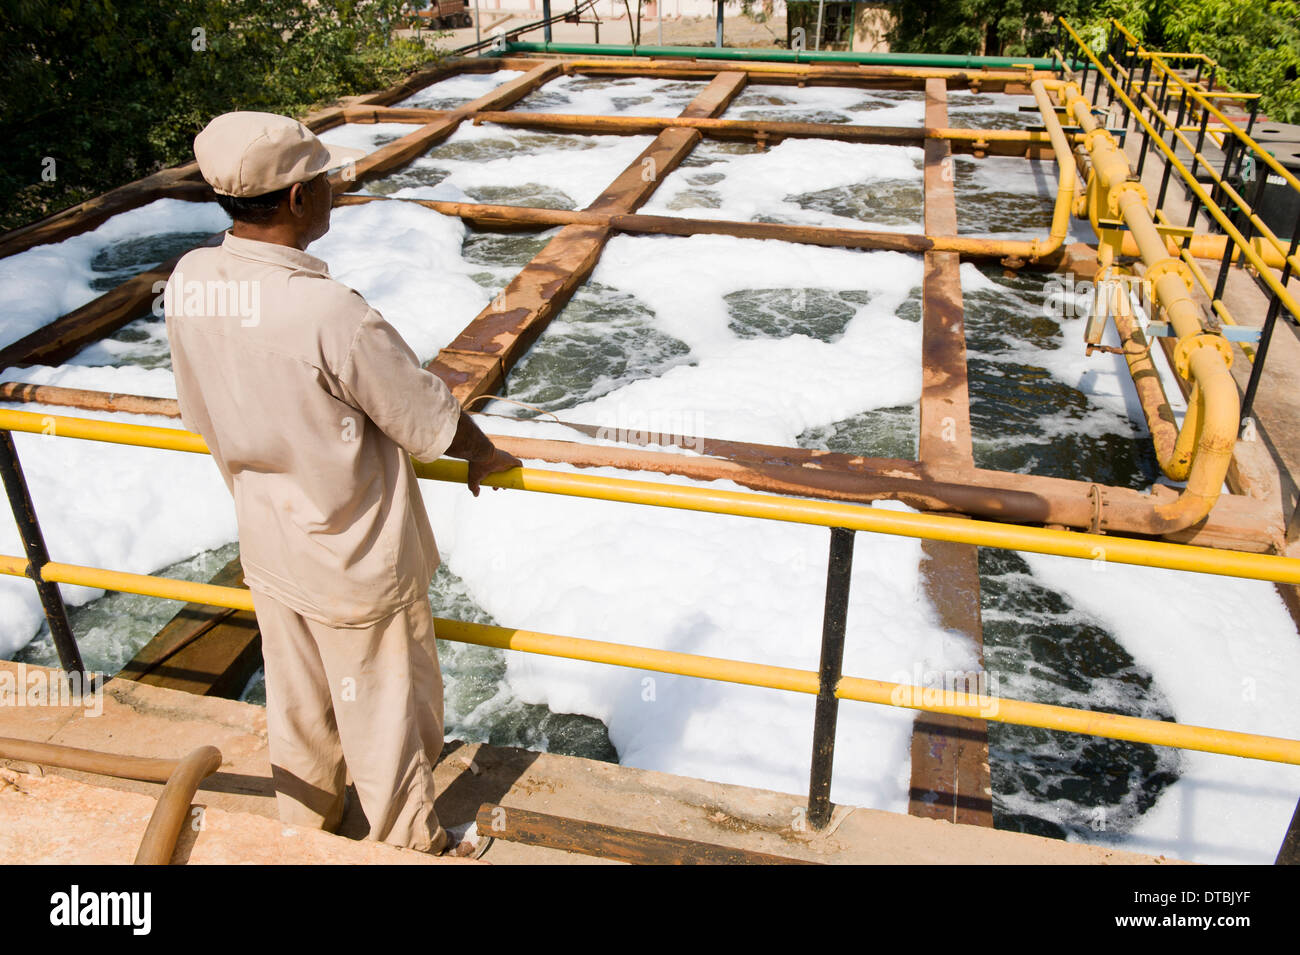 Indien Madhya Pradesh , Kläranlage für die sterbende Einheit der Textilfabrik Maral Overseas in der Nähe von Indore, Behandlung von Wasser aus Sterben und Bleichen Prozess Stockfoto